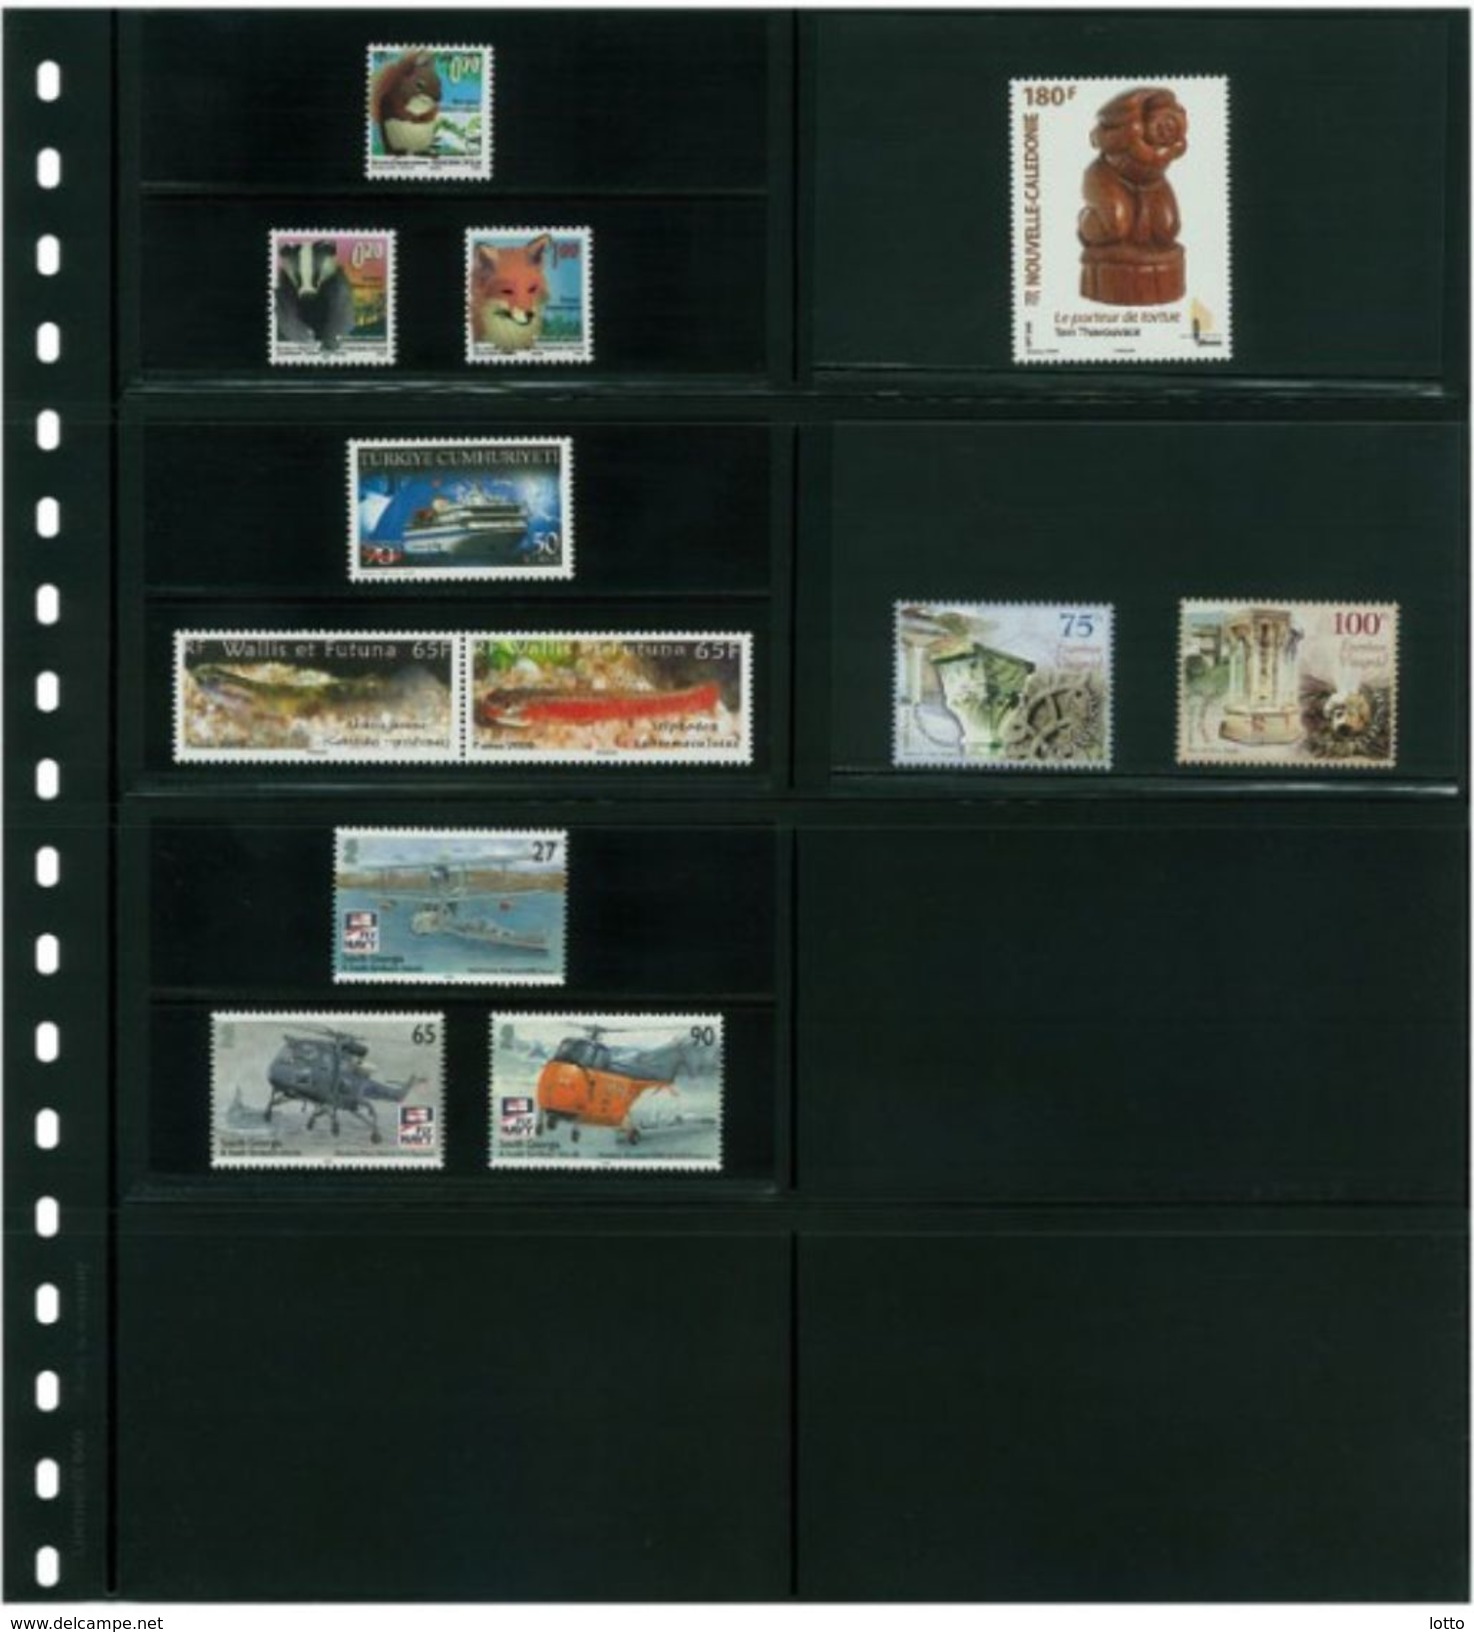 Lindner Omnia Klemmkartenblatt Mit 8 Taschen (120 X 66 Mm) Pro Seite, Schwarz +++ NEU OVP +++ (040) - Blankoblätter